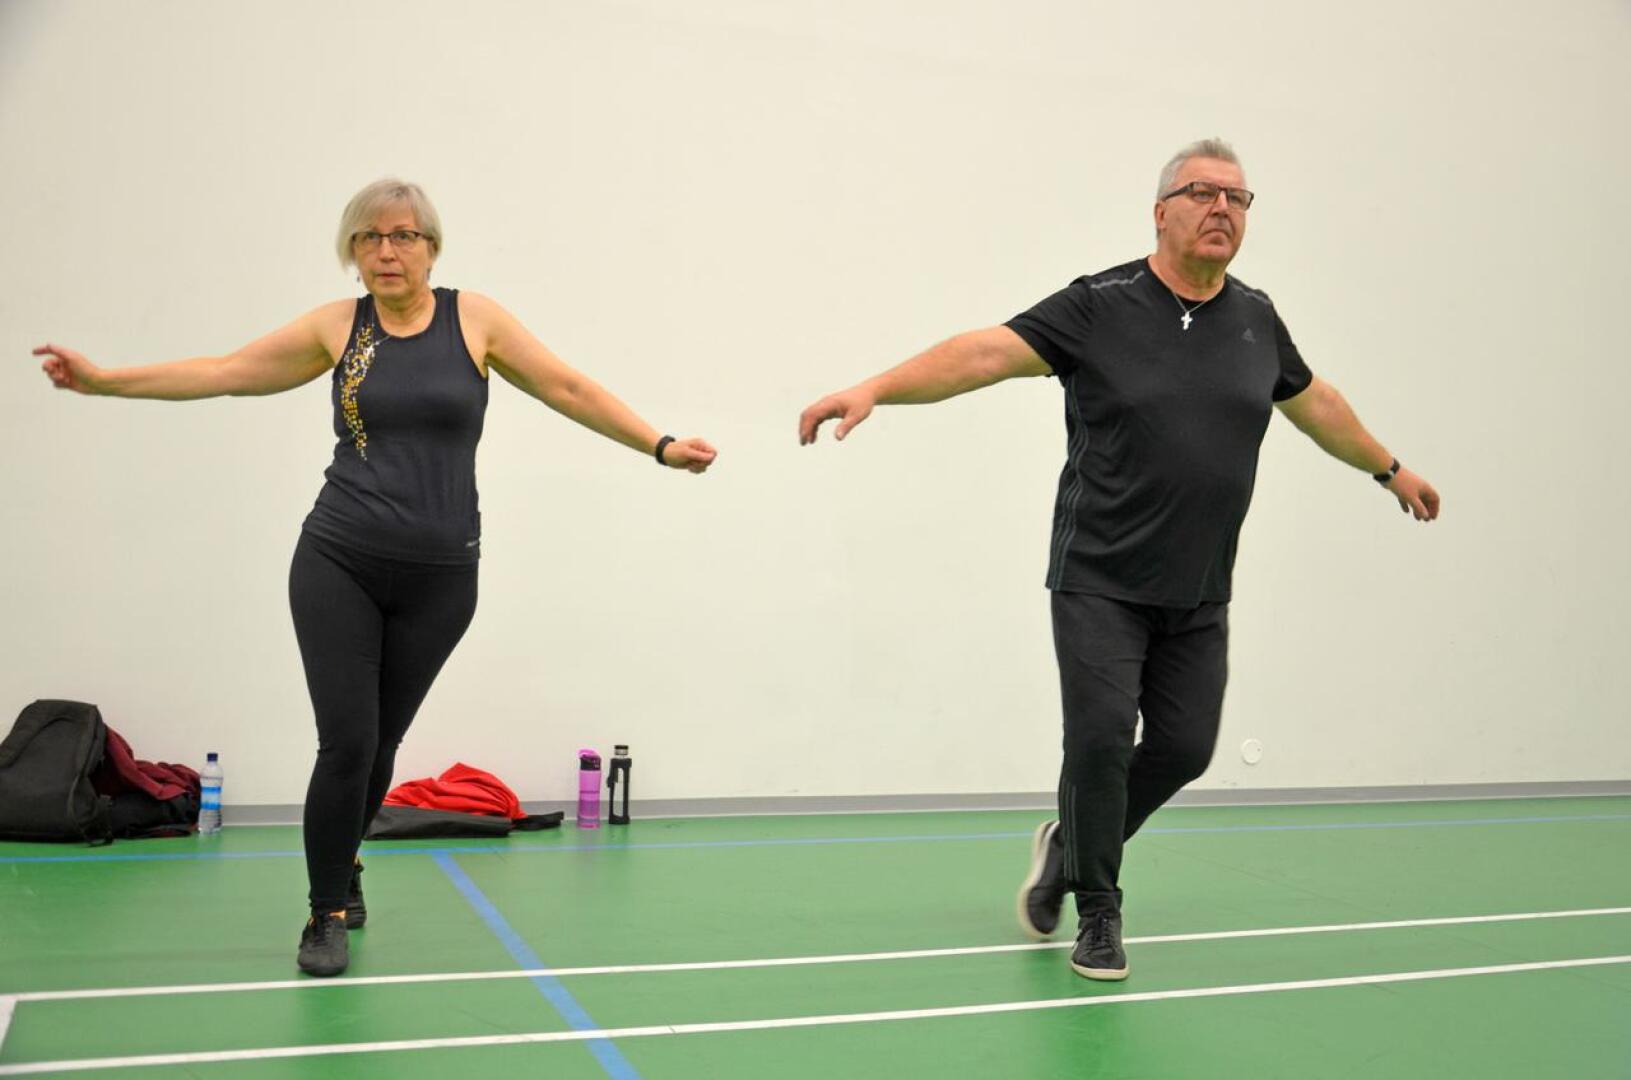 Eila ja Timo Qvist päättivät ryhtyä harrastamaan liikuntaa yhdessä nyt kun on hyvää aikaa panostaa terveyteen. Seniorilavis yllätti iloisesti. Siellä oppii kehon hallintaa ja se on myös hyvää aivojumppaa, lihashuoltoa unohtamatta.